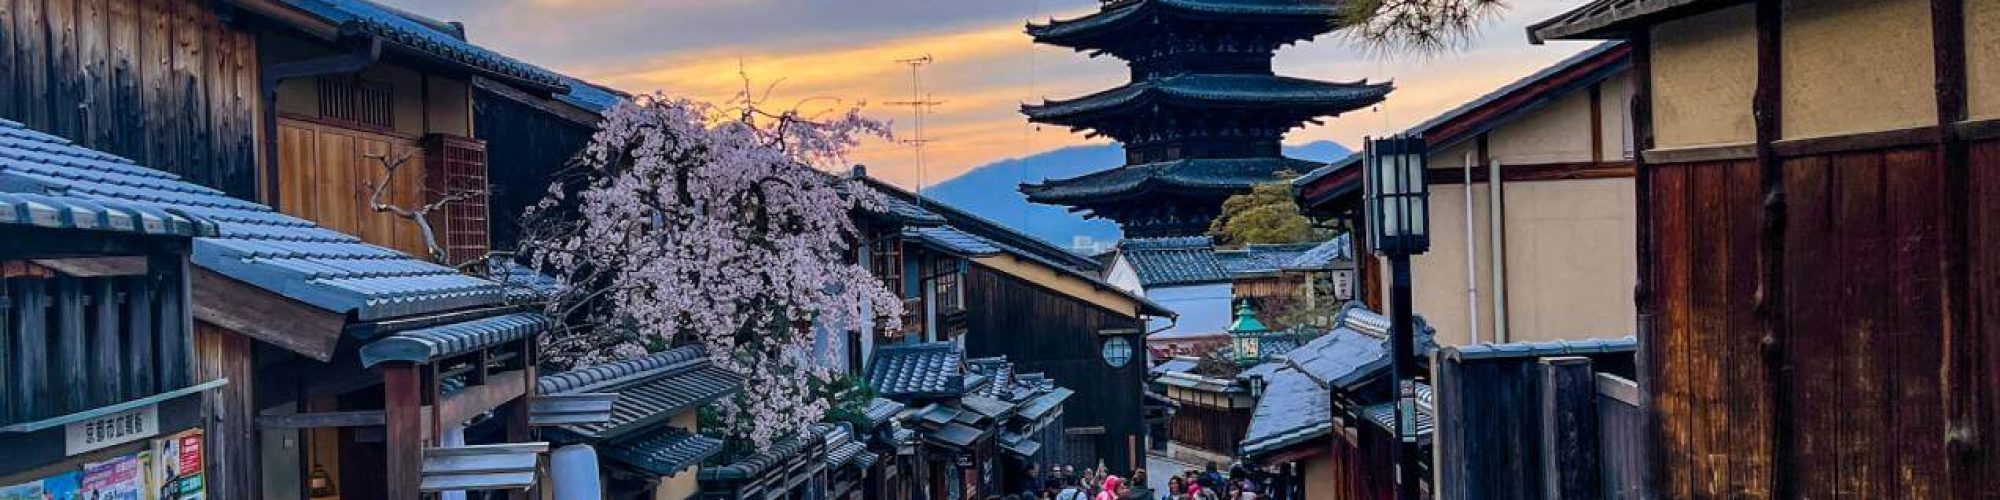 Kyoto: Gion